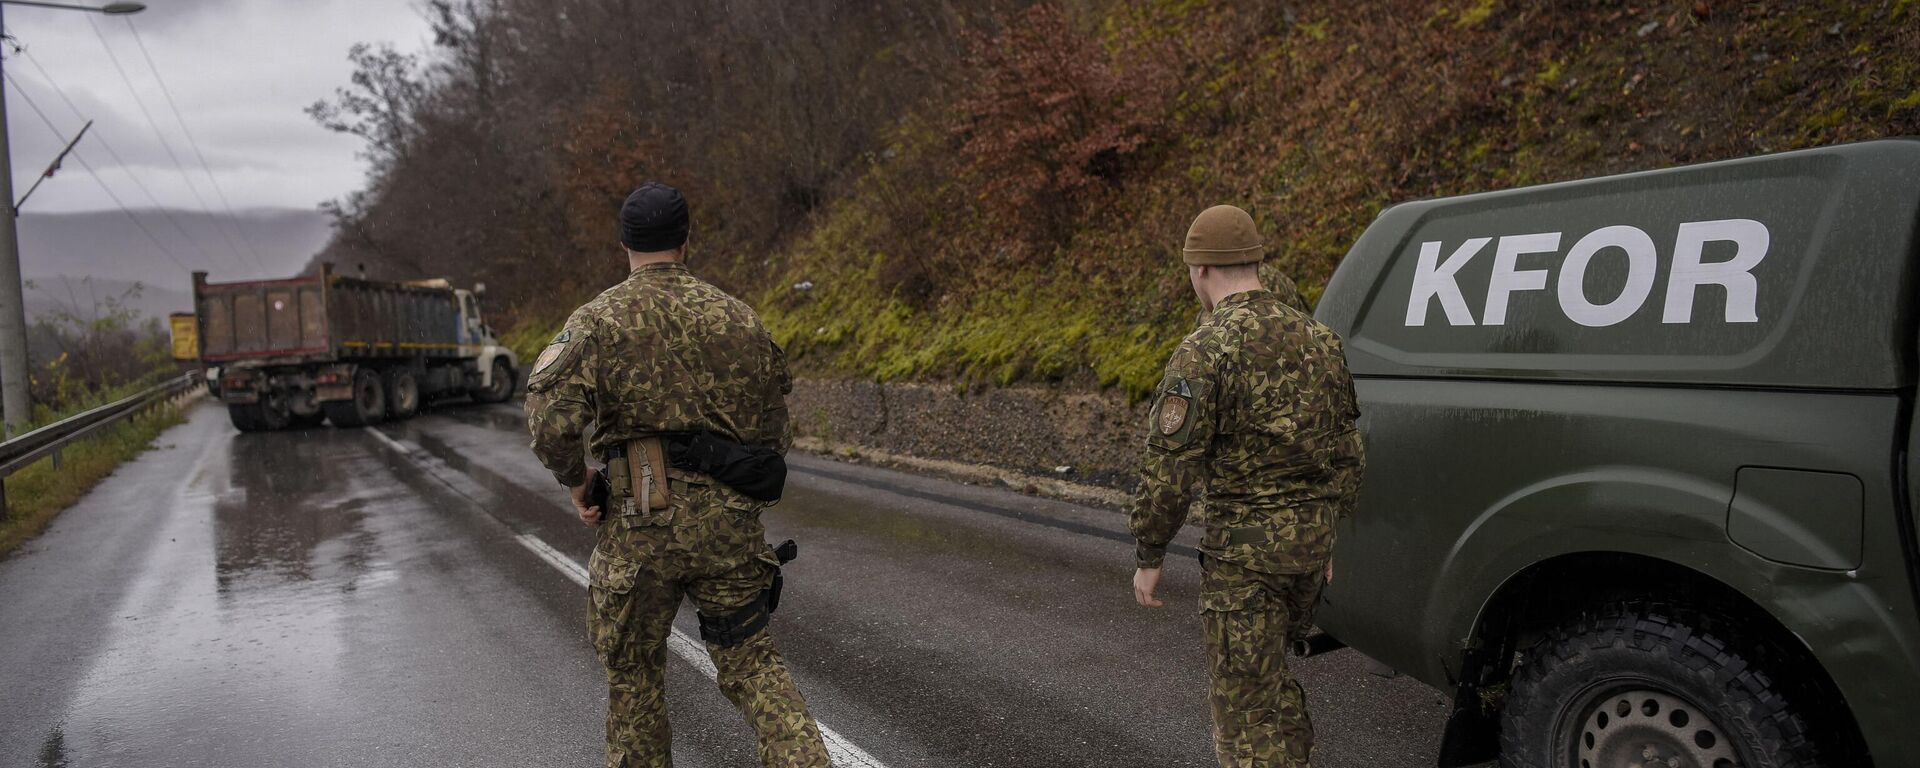 Солдаты миссии KFOR под руководством НАТО осматривают баррикаду, установленную этническими сербами возле города Зубин Поток (северное Косово) - Sputnik Латвия, 1920, 12.12.2022